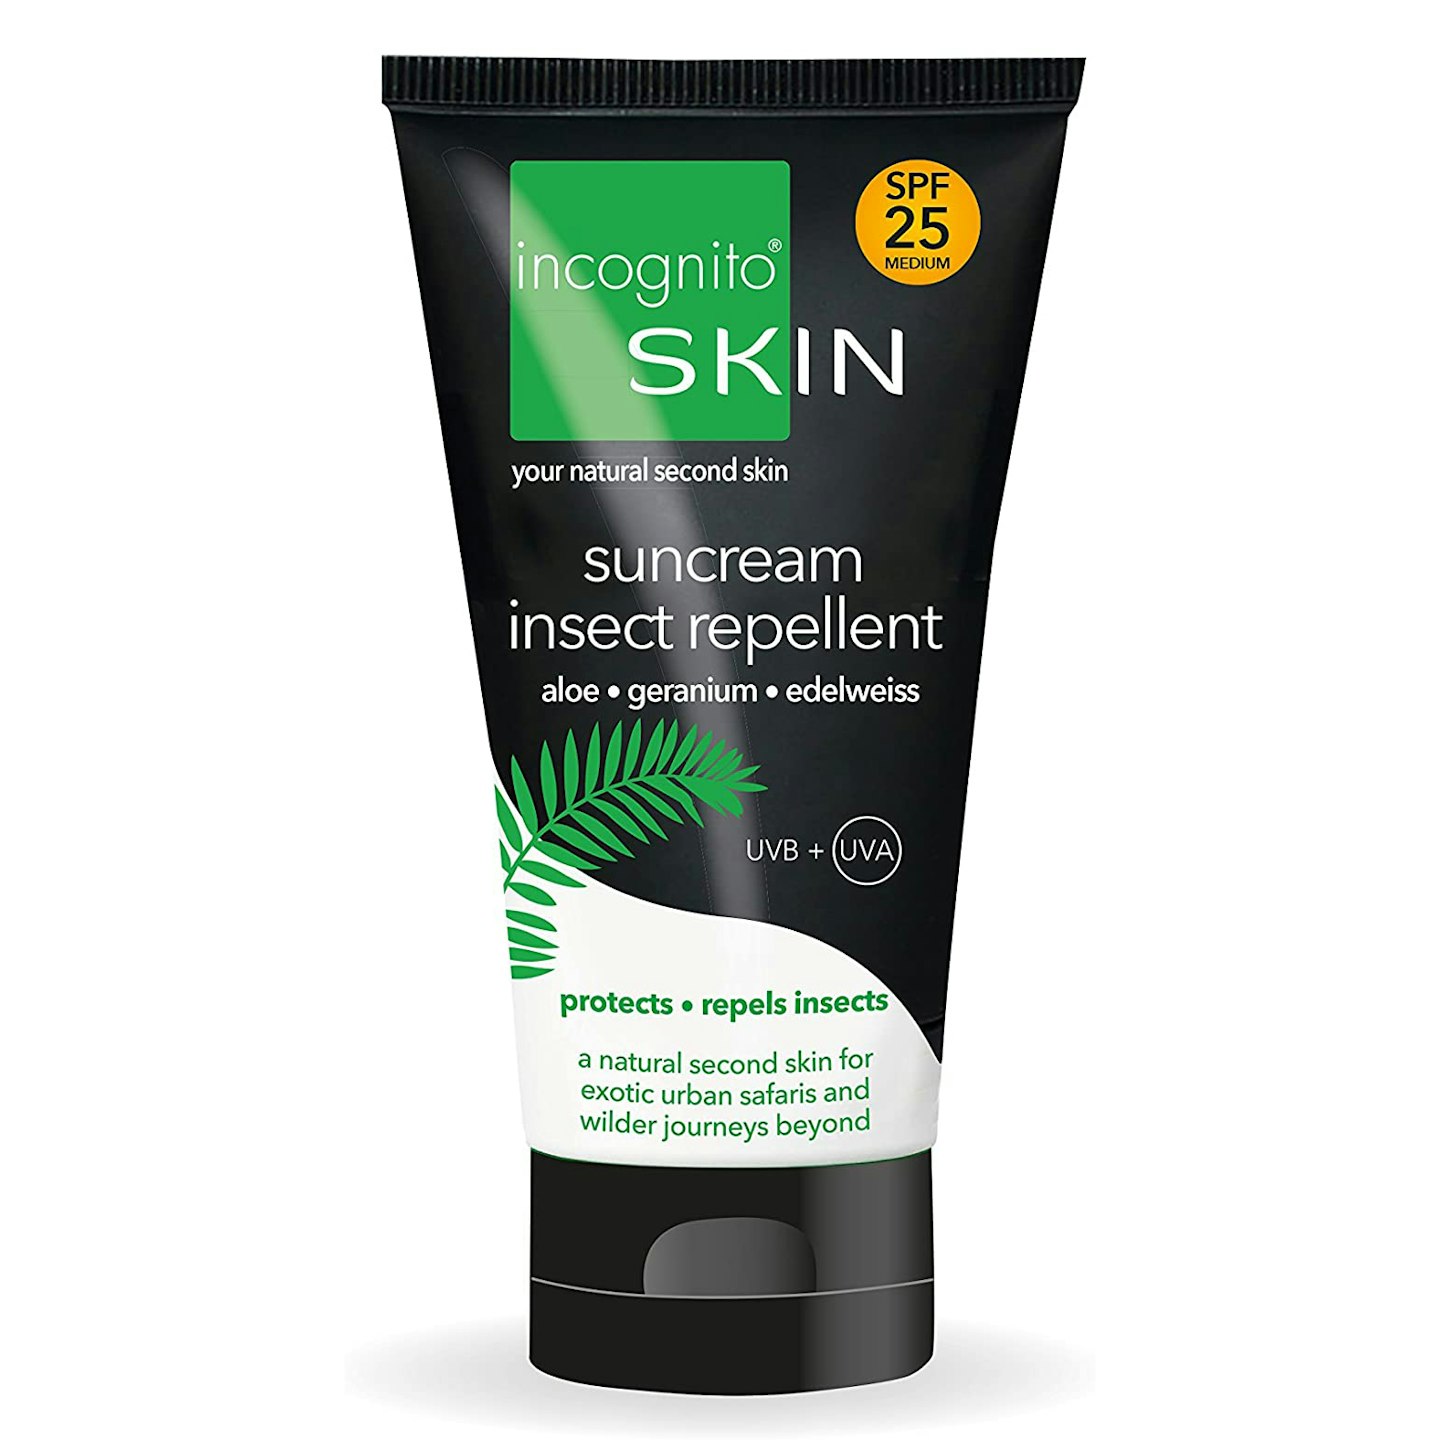 Incognito Skin Children's Suncream and Insect Repellent